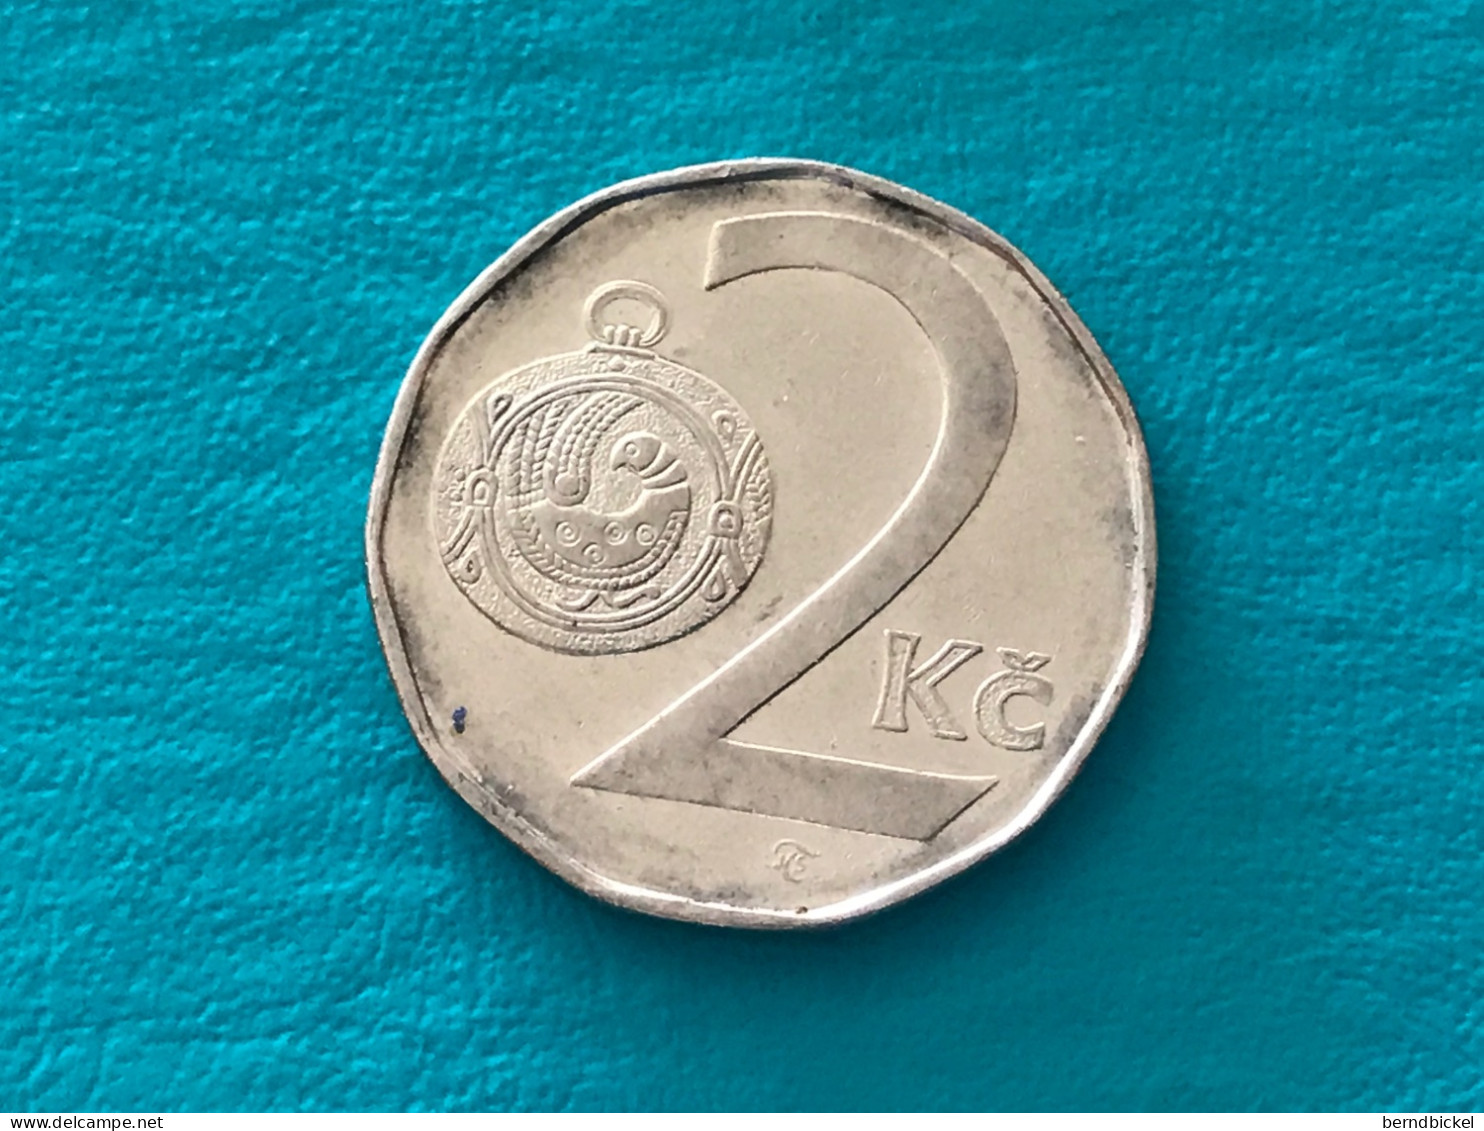 Münze Münzen Umlaufmünze Tschechien 2 Koruna 1993 - Tchéquie